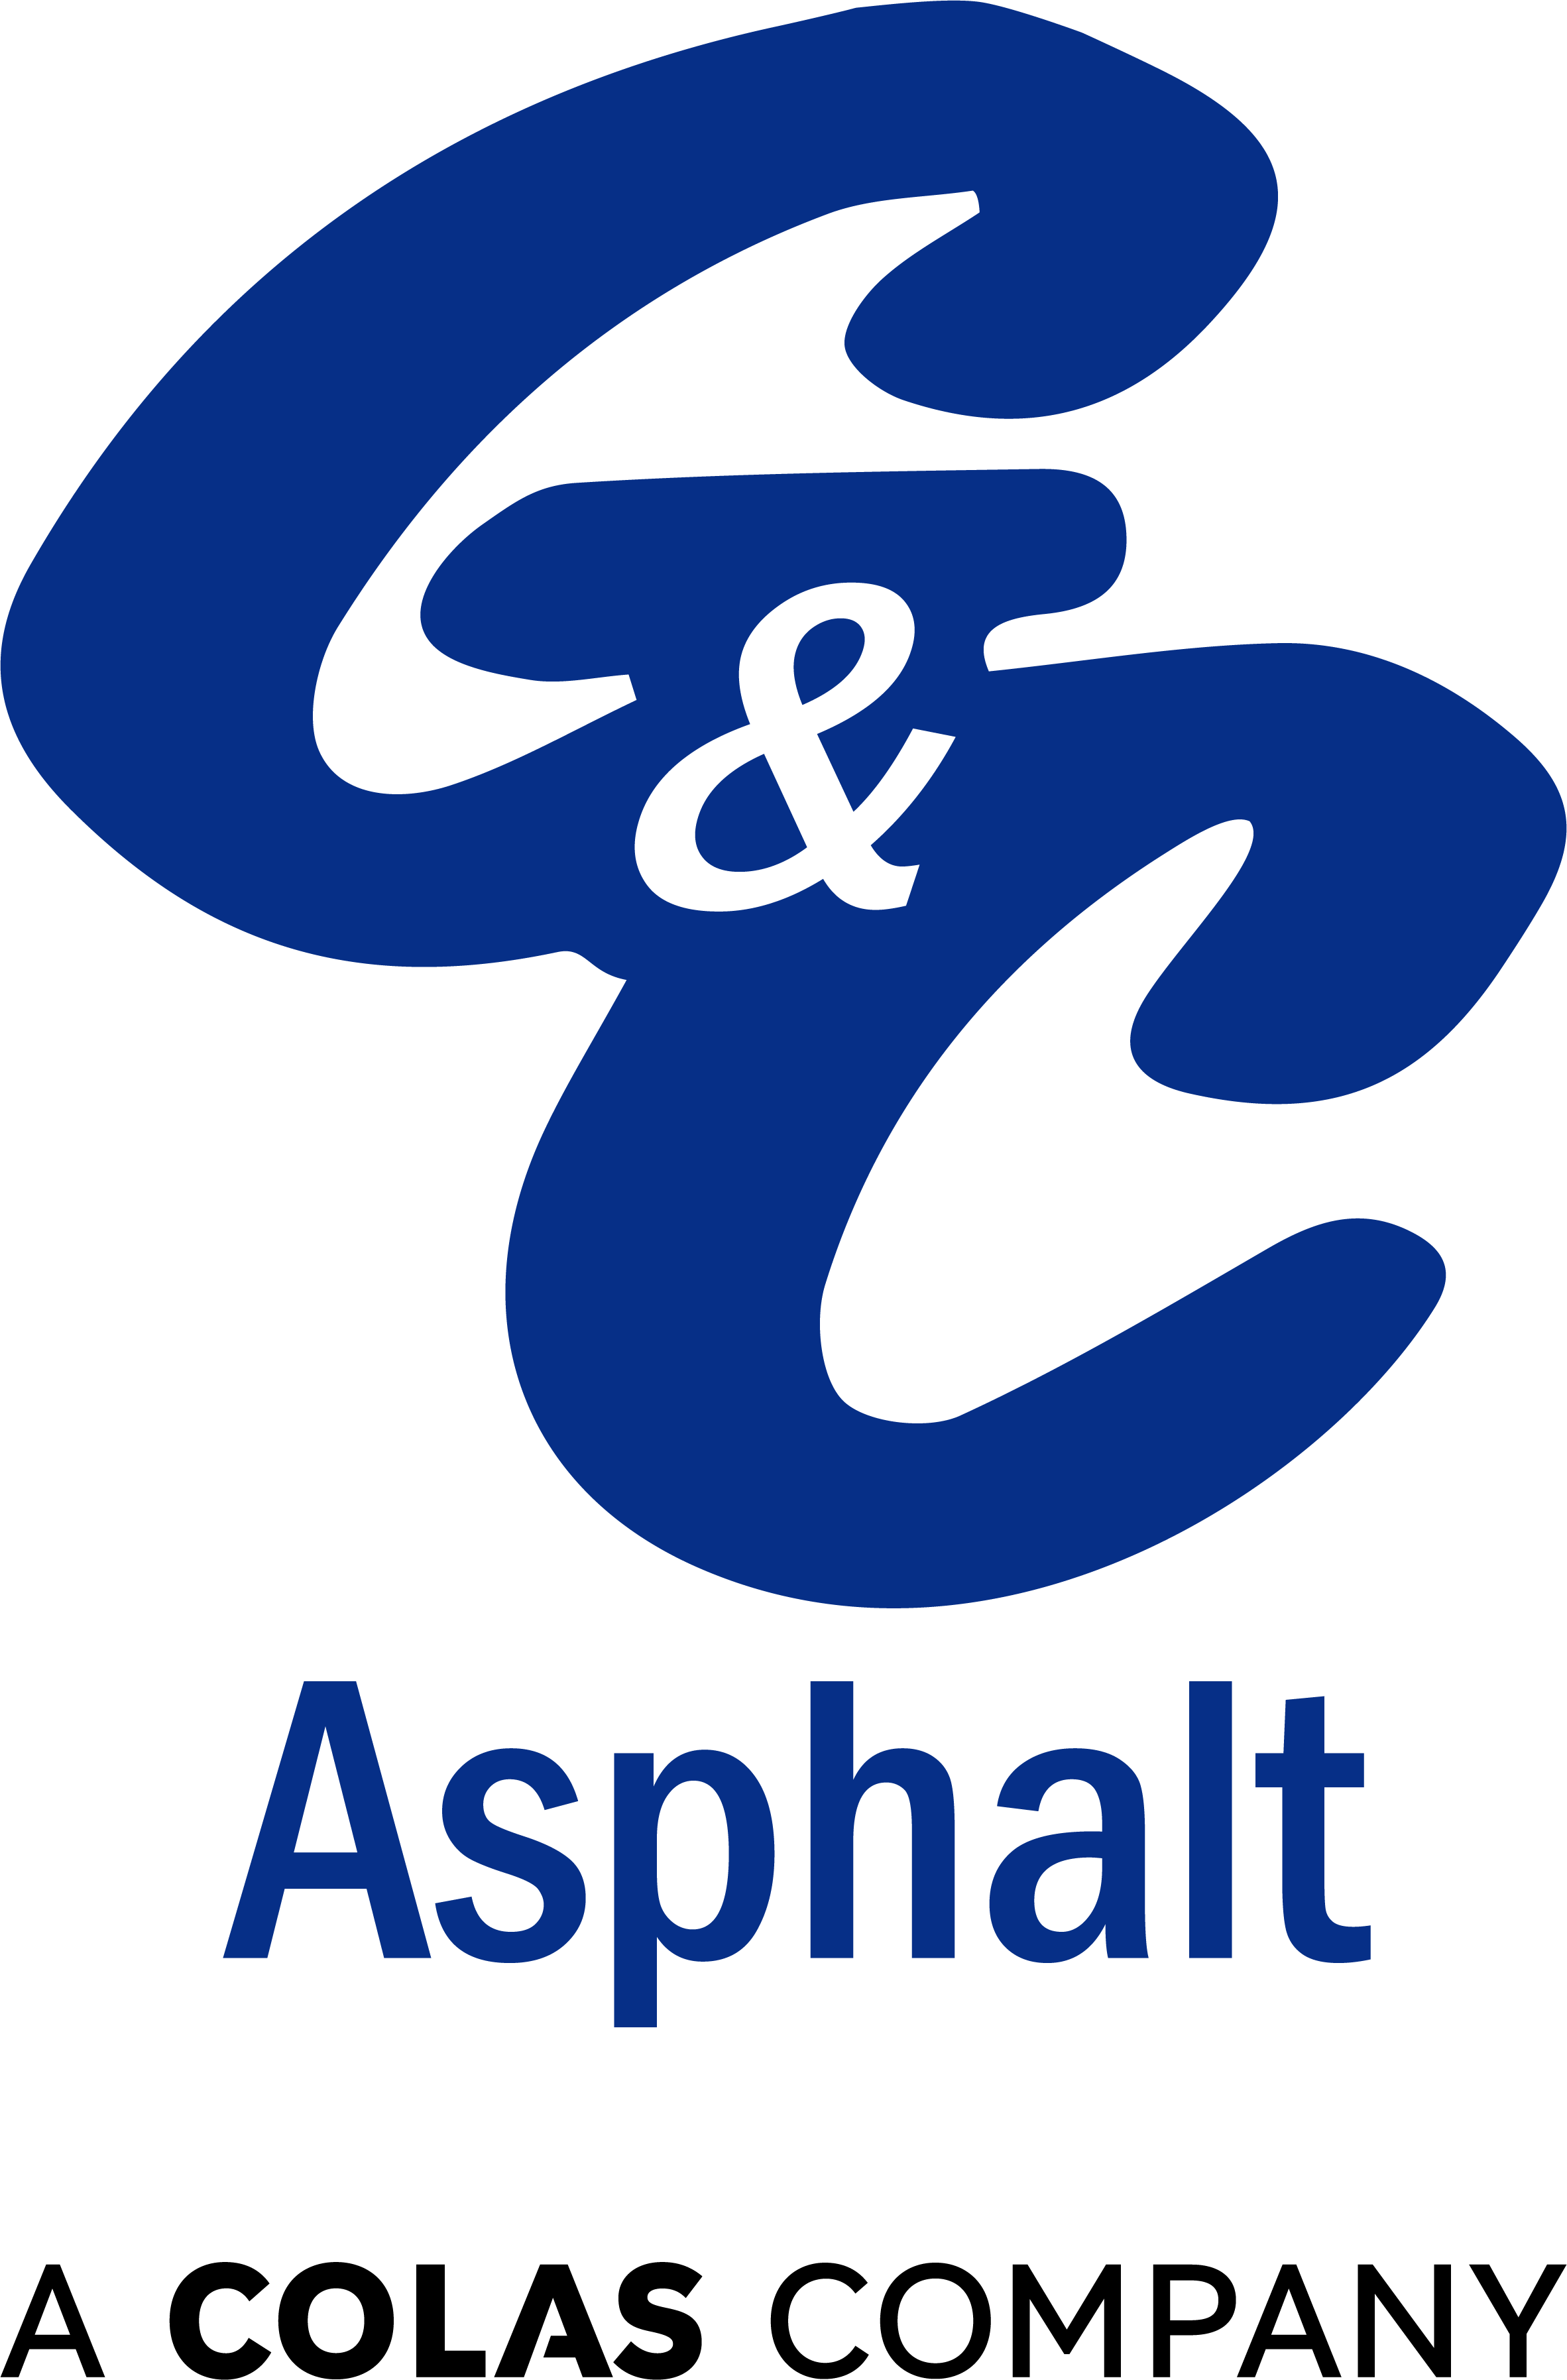 G&C Asphalt